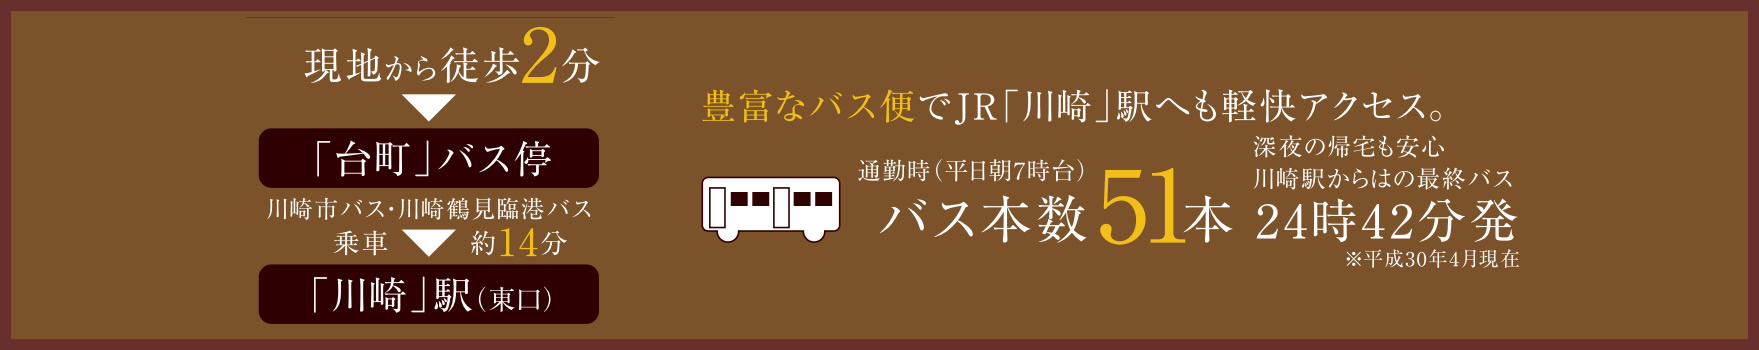 豊富なバス便でJR「川崎」駅へも軽快アクセス。